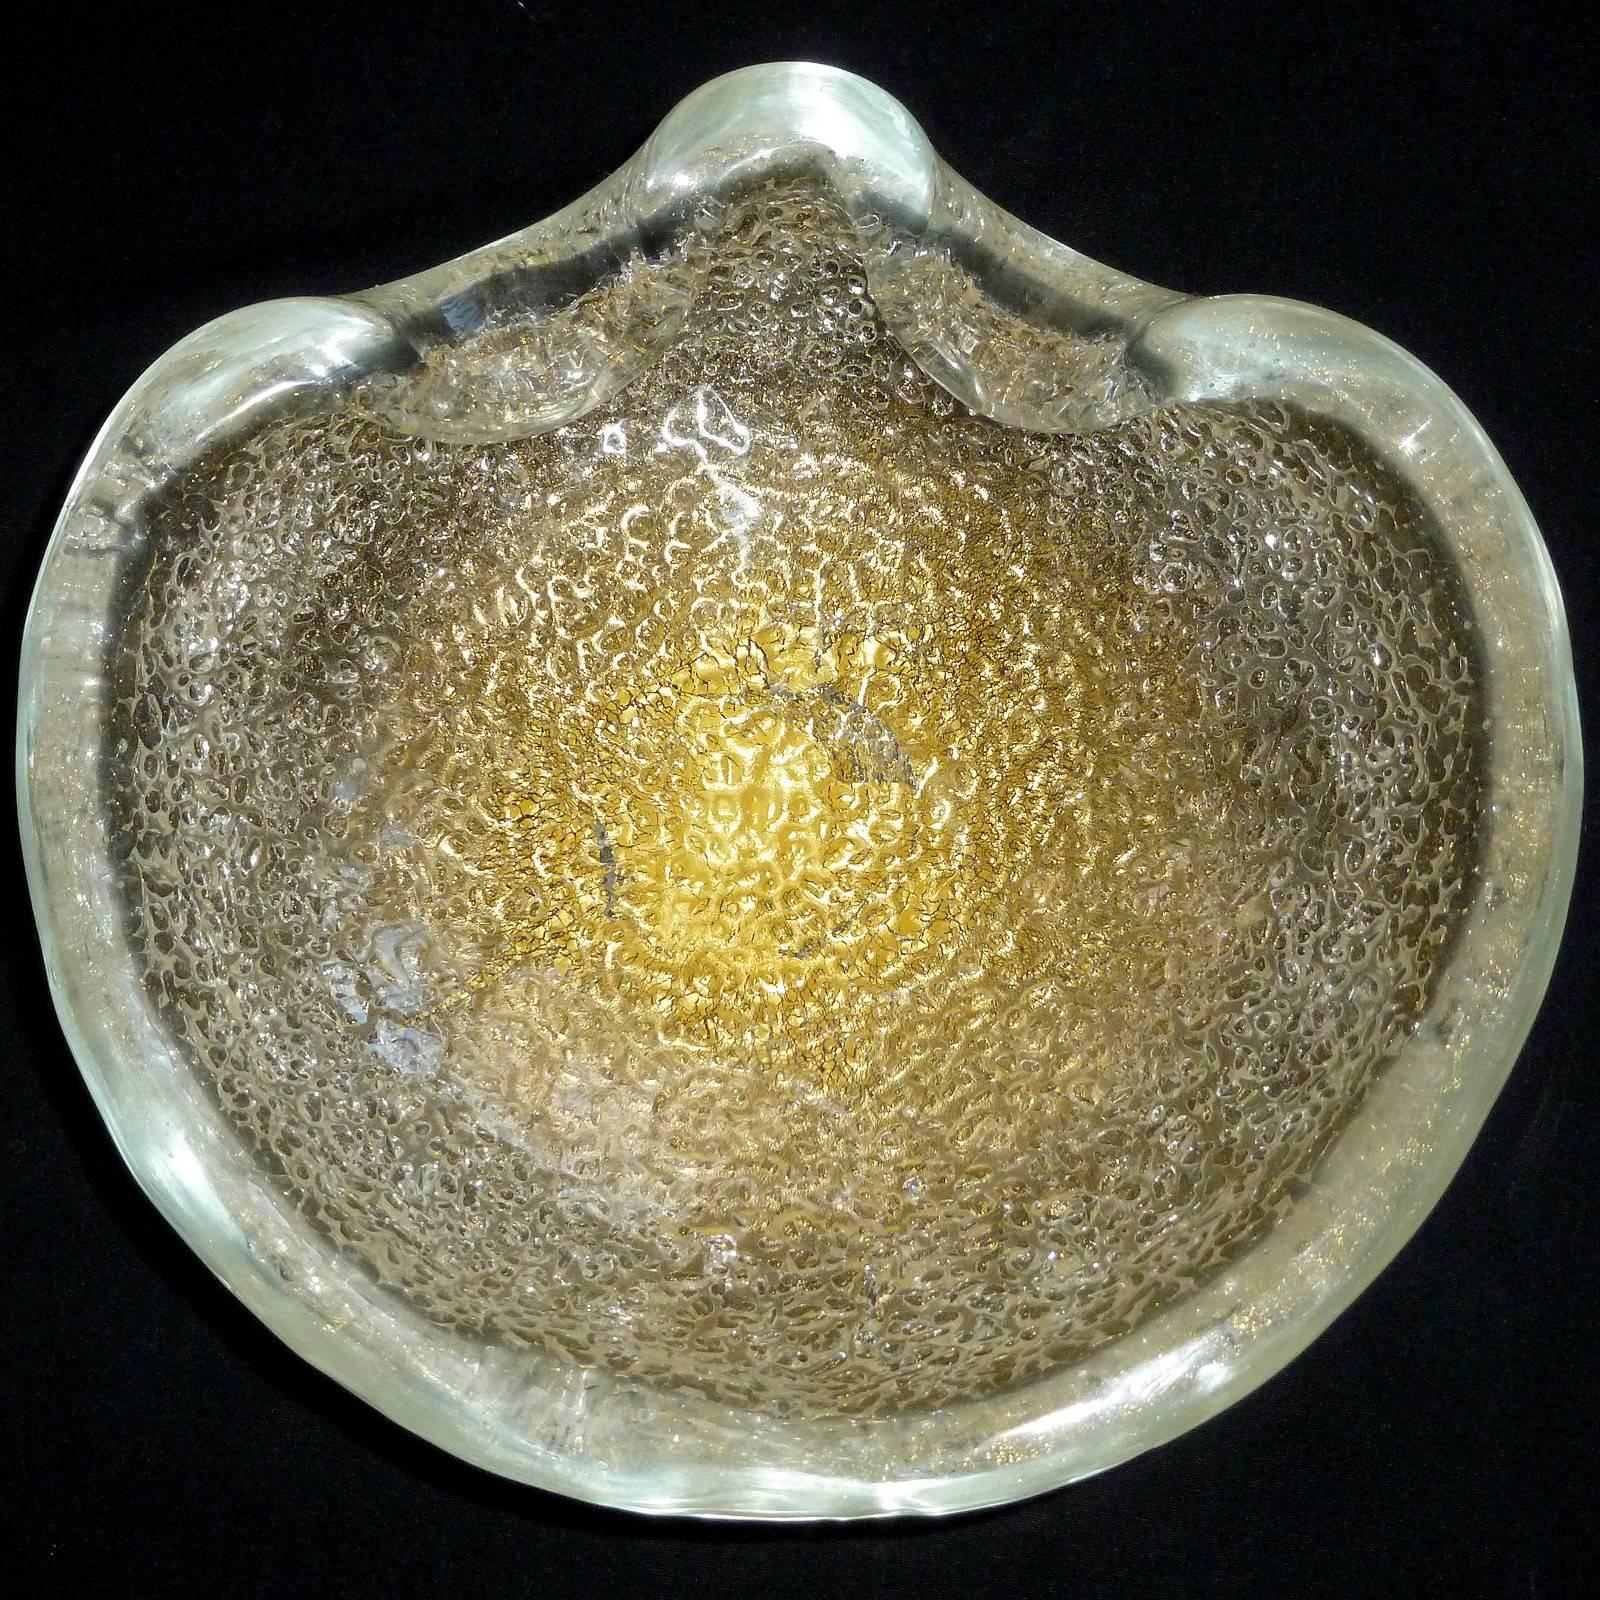 Magnifique bol en verre d'art italien soufflé à la main de Murano, transparent avec des mouchetures dorées et une texture en relief. Documenté au designer Ercole Barovier pour la société Barovier e Toso, vers 1940. Créé dans le design 